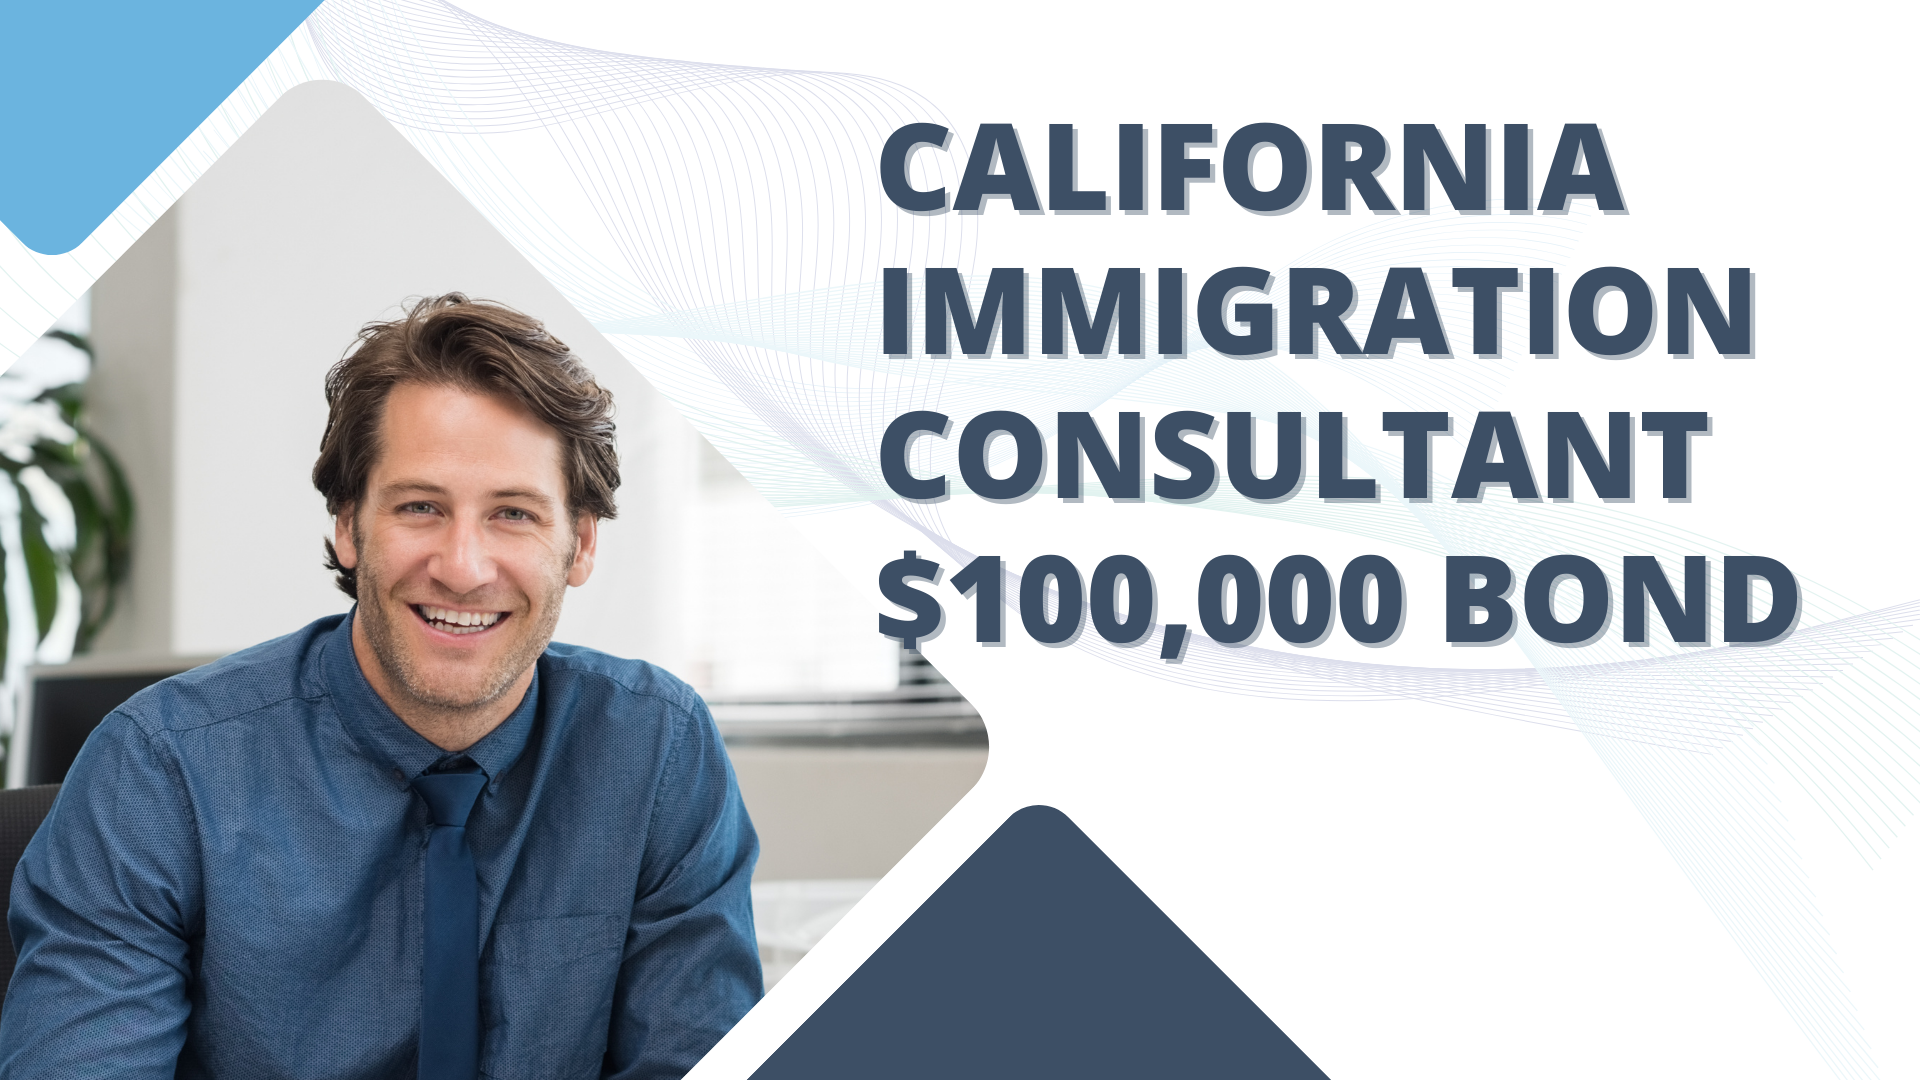 Surety Bond-California Immigration Consultant $100,000 Bond